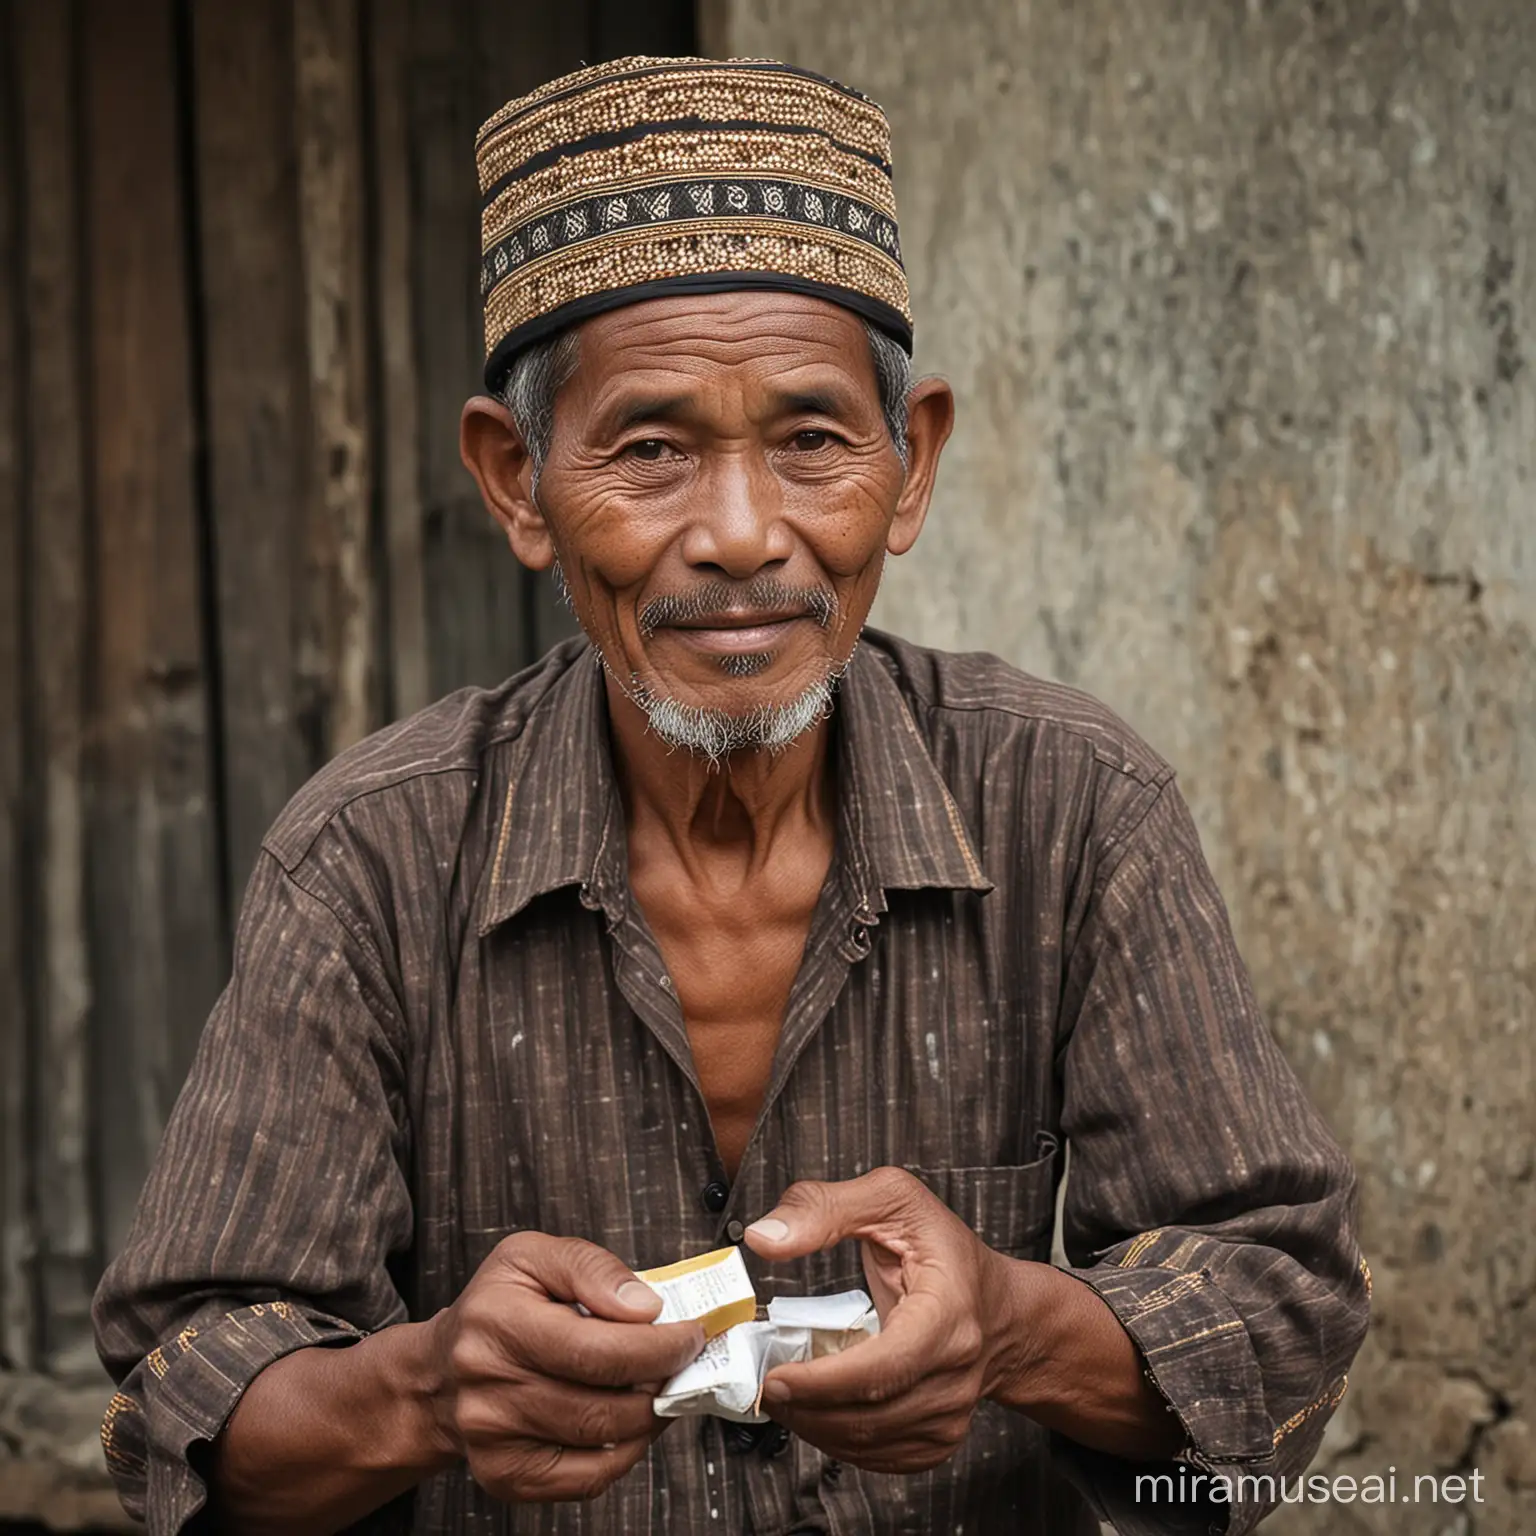 Seorang pria indonesia memakai kopiyah, umur 55 tahun, memegang obat kuat, dan menawarkannya kepada orang lain